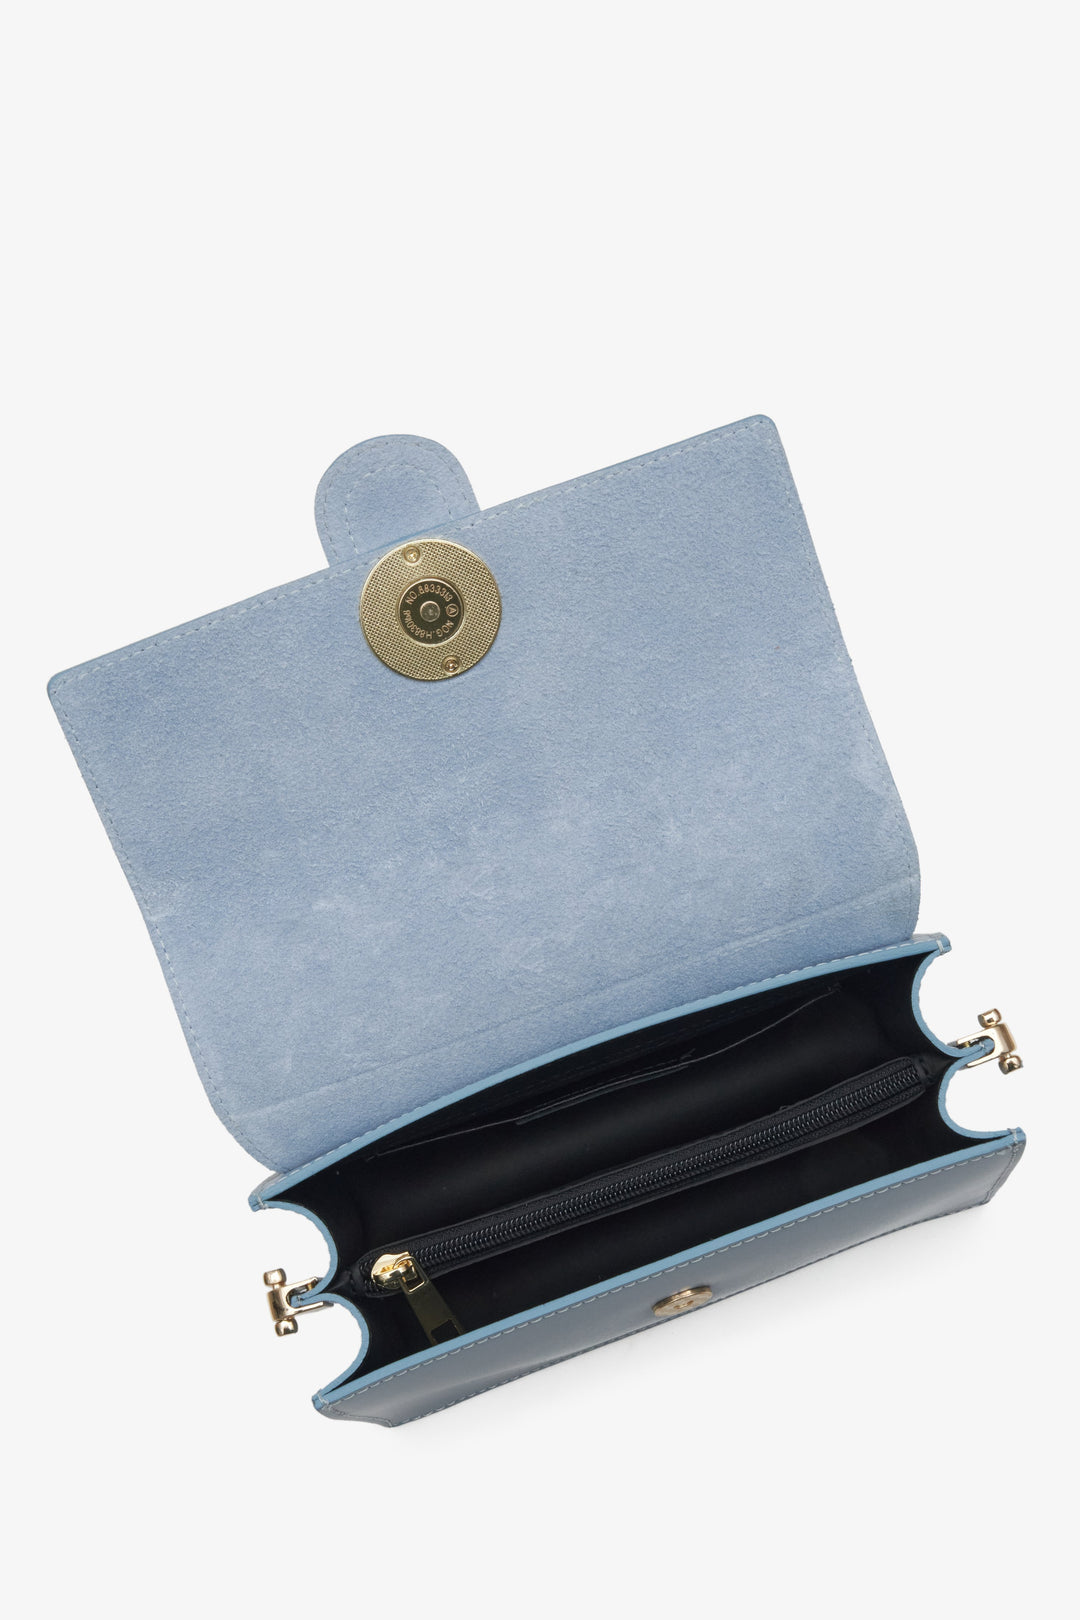 Skórzana jasnoniebieska torebka damska Estro - prezentacja wnętrza modelu.